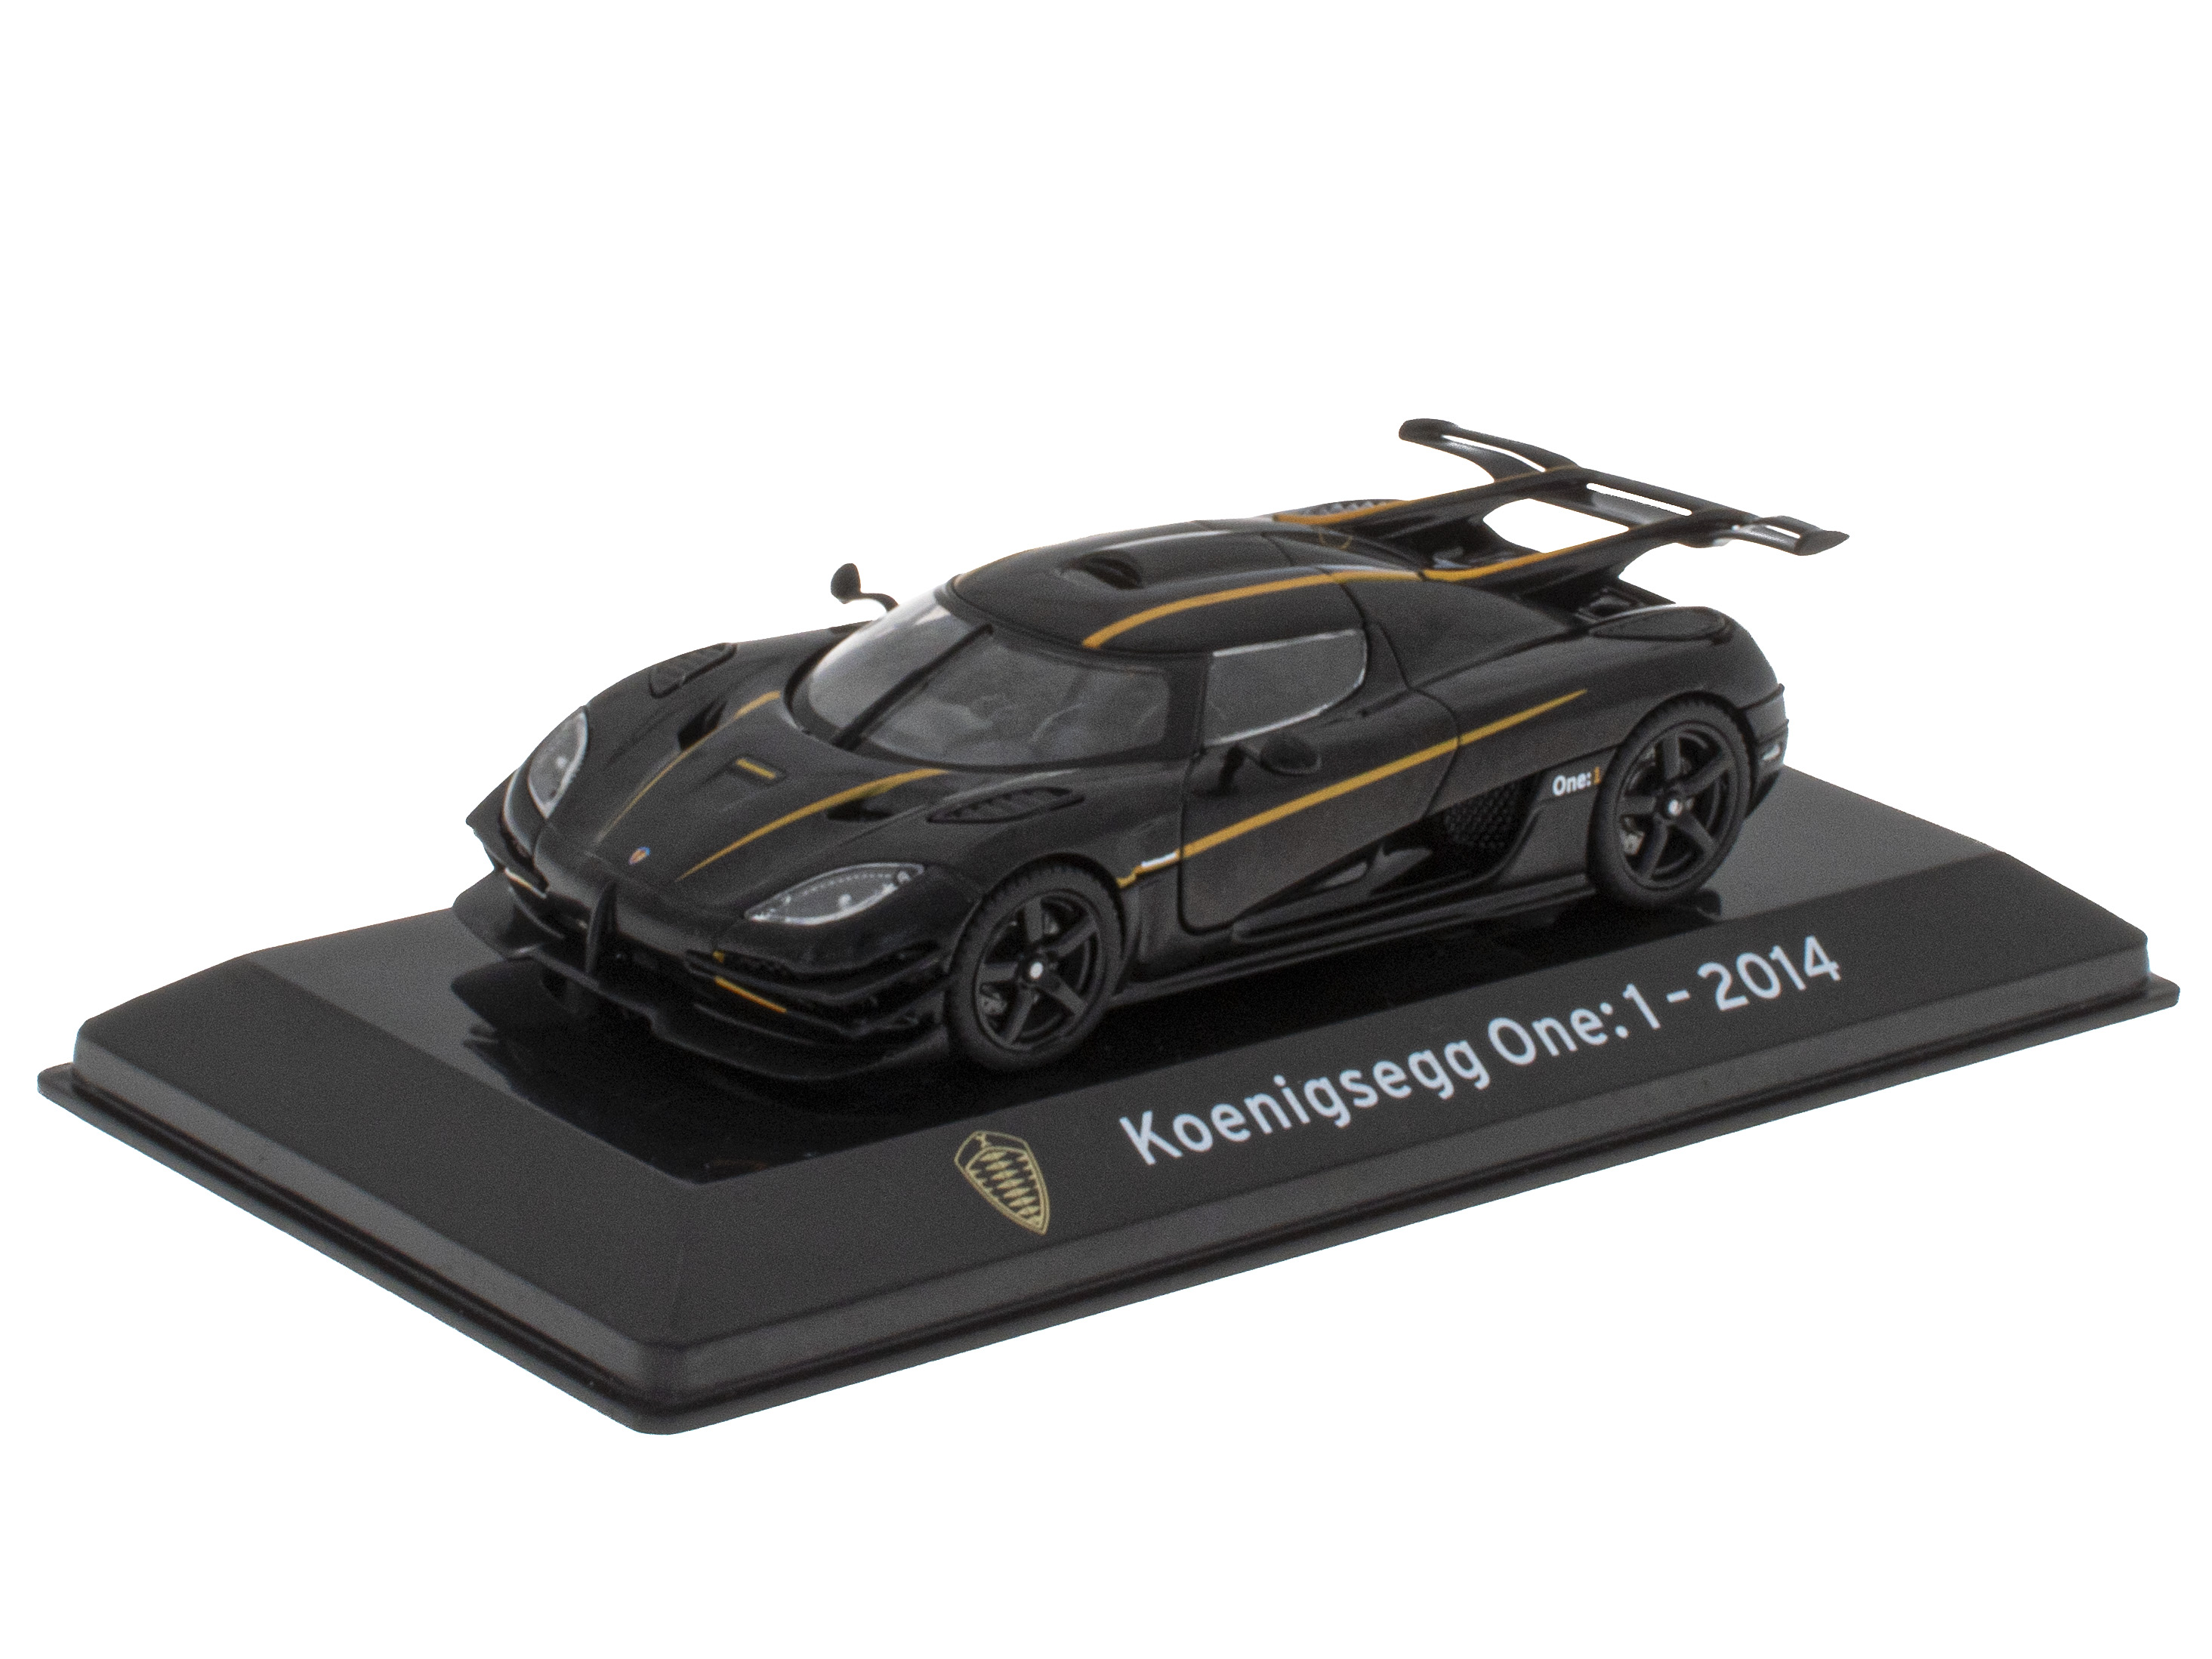 Koenigsegg One:1 - 2014